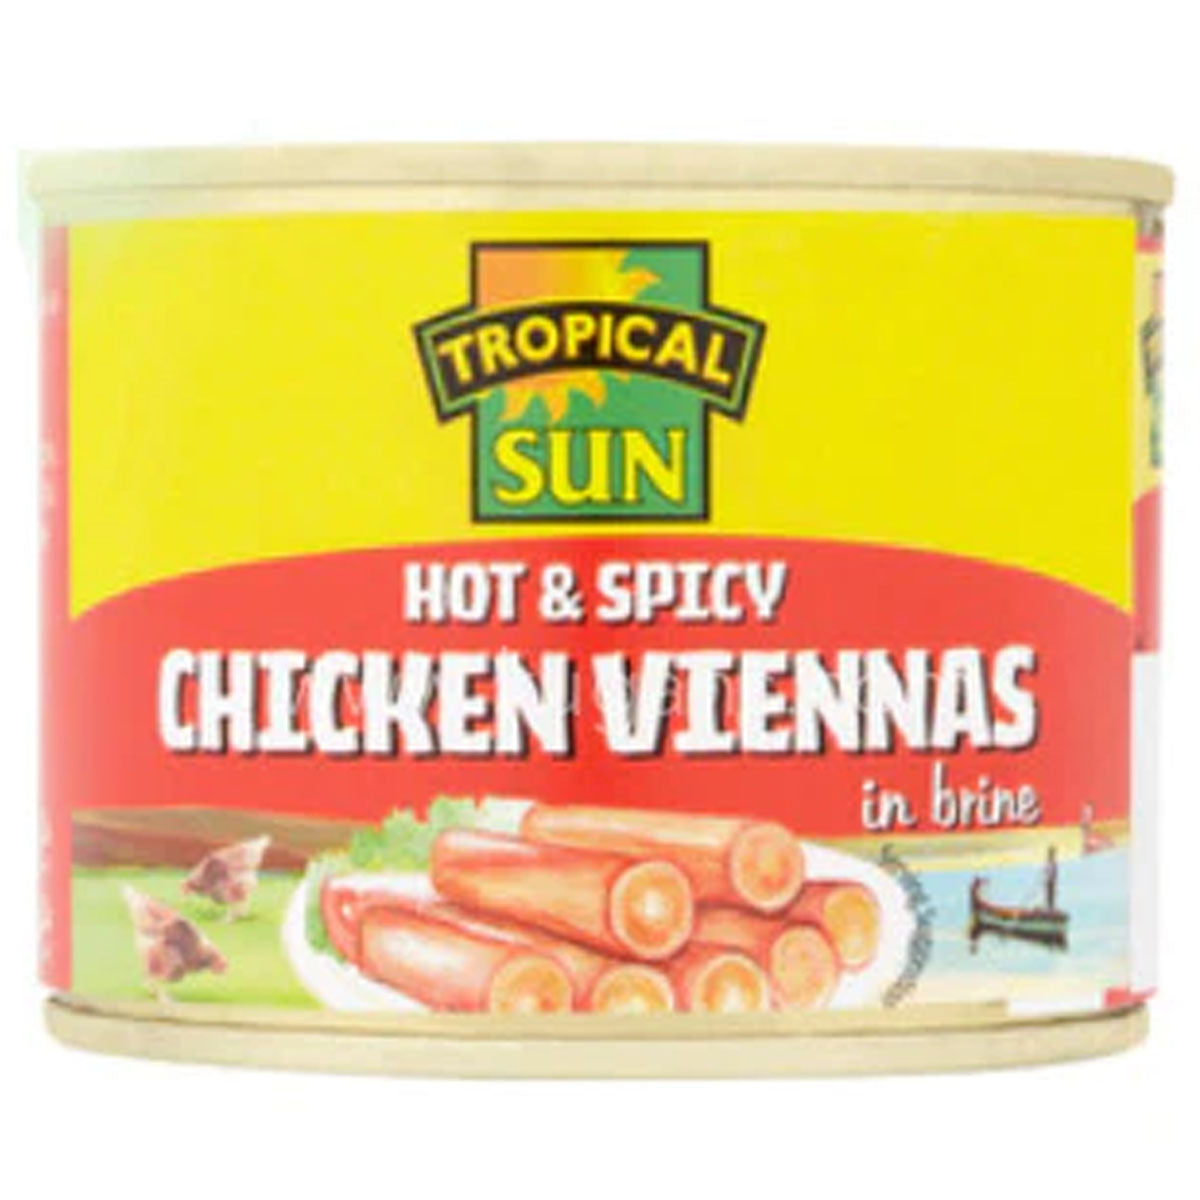 Tropic Sun - Hot Spicy Chicken Viennas - 200g in a tin.